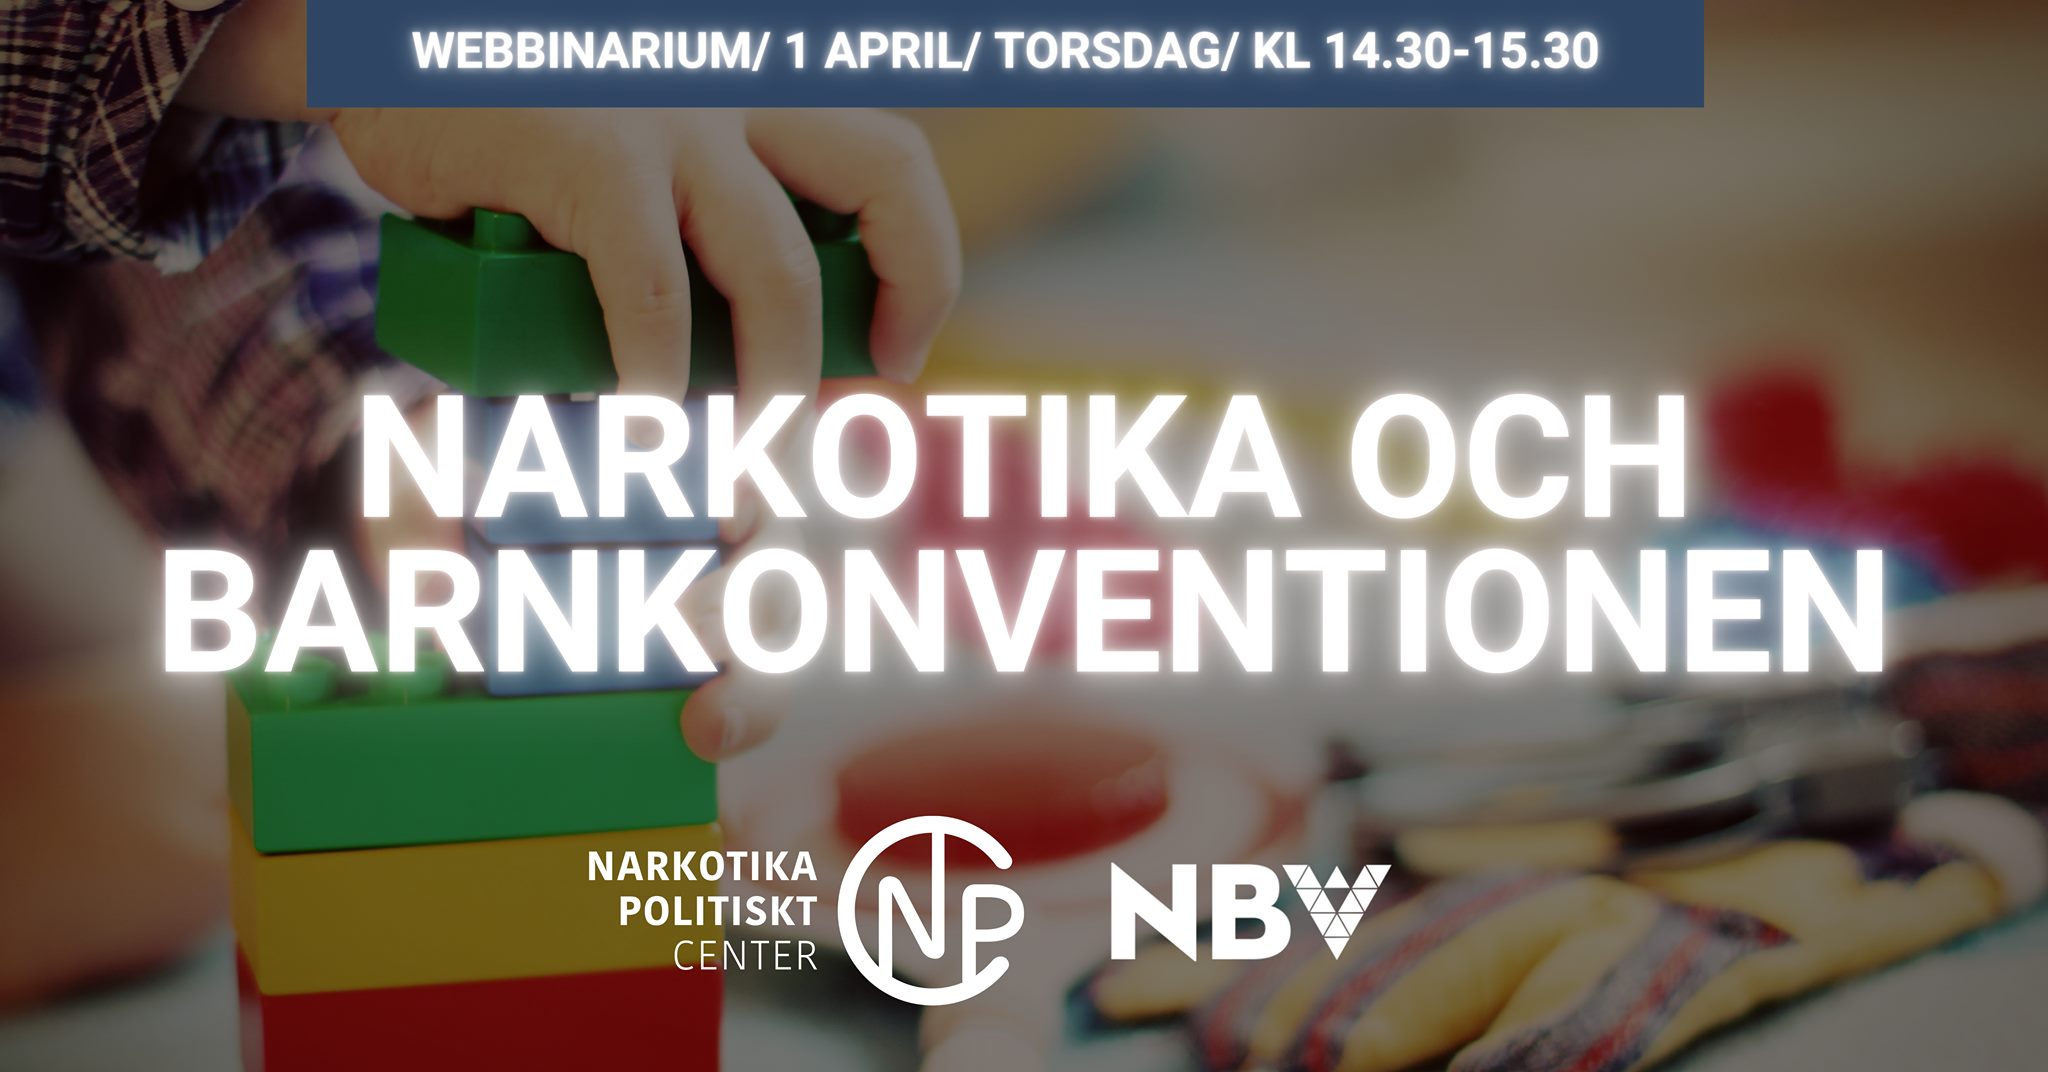 Webbinarium: Narkotika och barnkonventionen